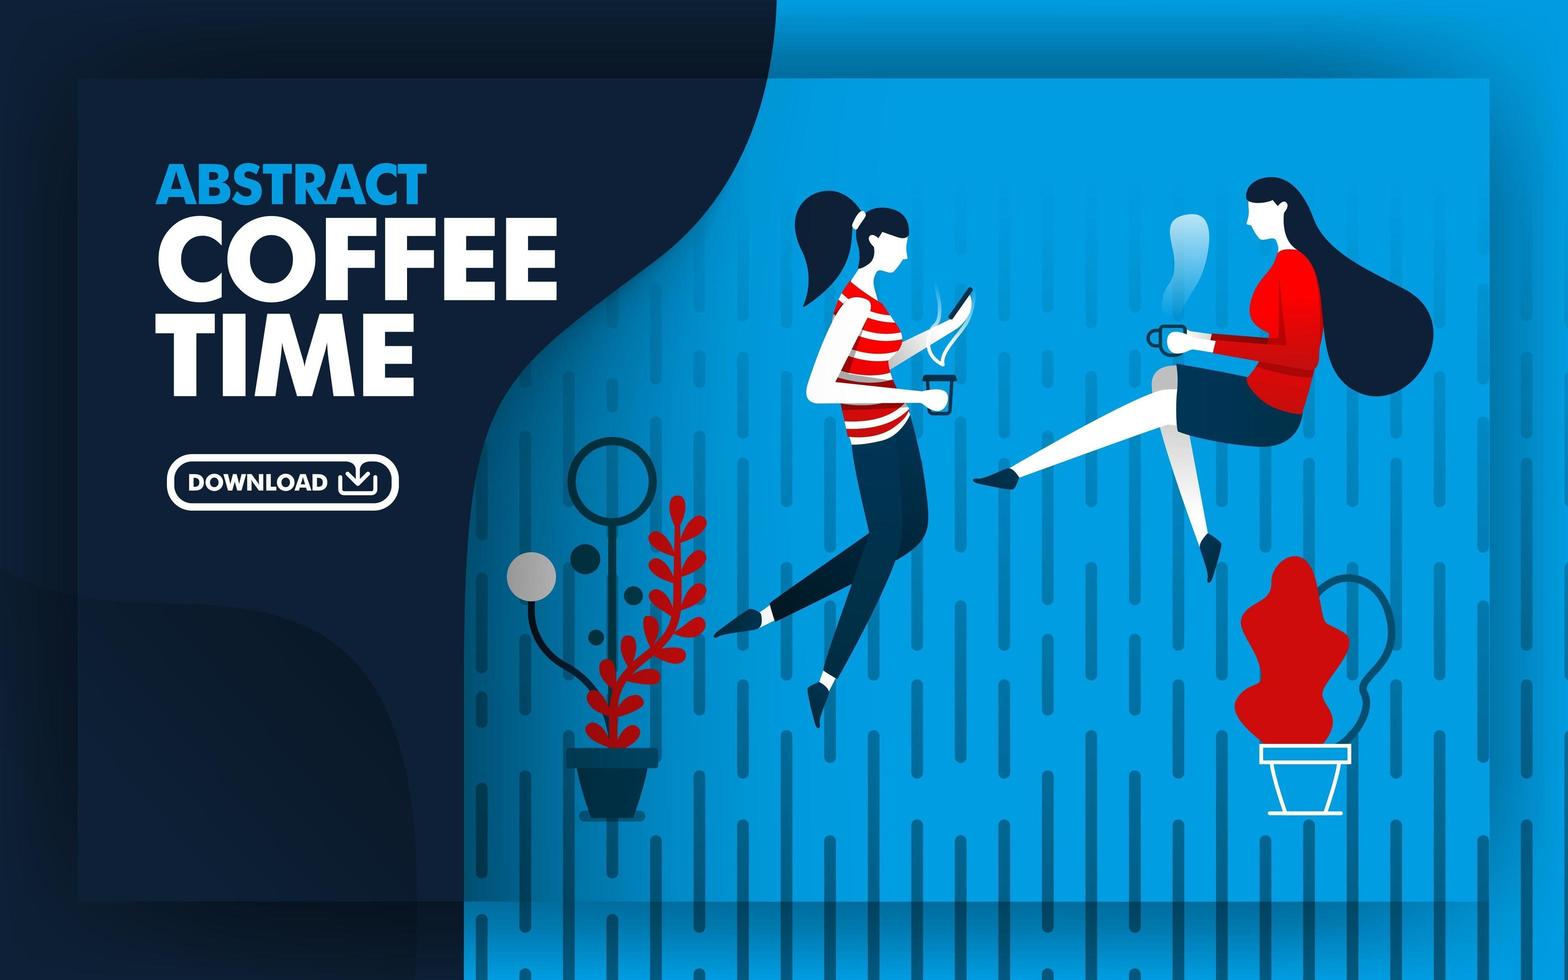 Vektor abstrakte Illustration Website Banner mit blau, dunkelblau und rot mit Kaffee Zeit Thema. Zwei Frauen entspannten sich beim Kaffeetrinken im Regen. kann für Seite verwenden. flacher Cartoon-Stil